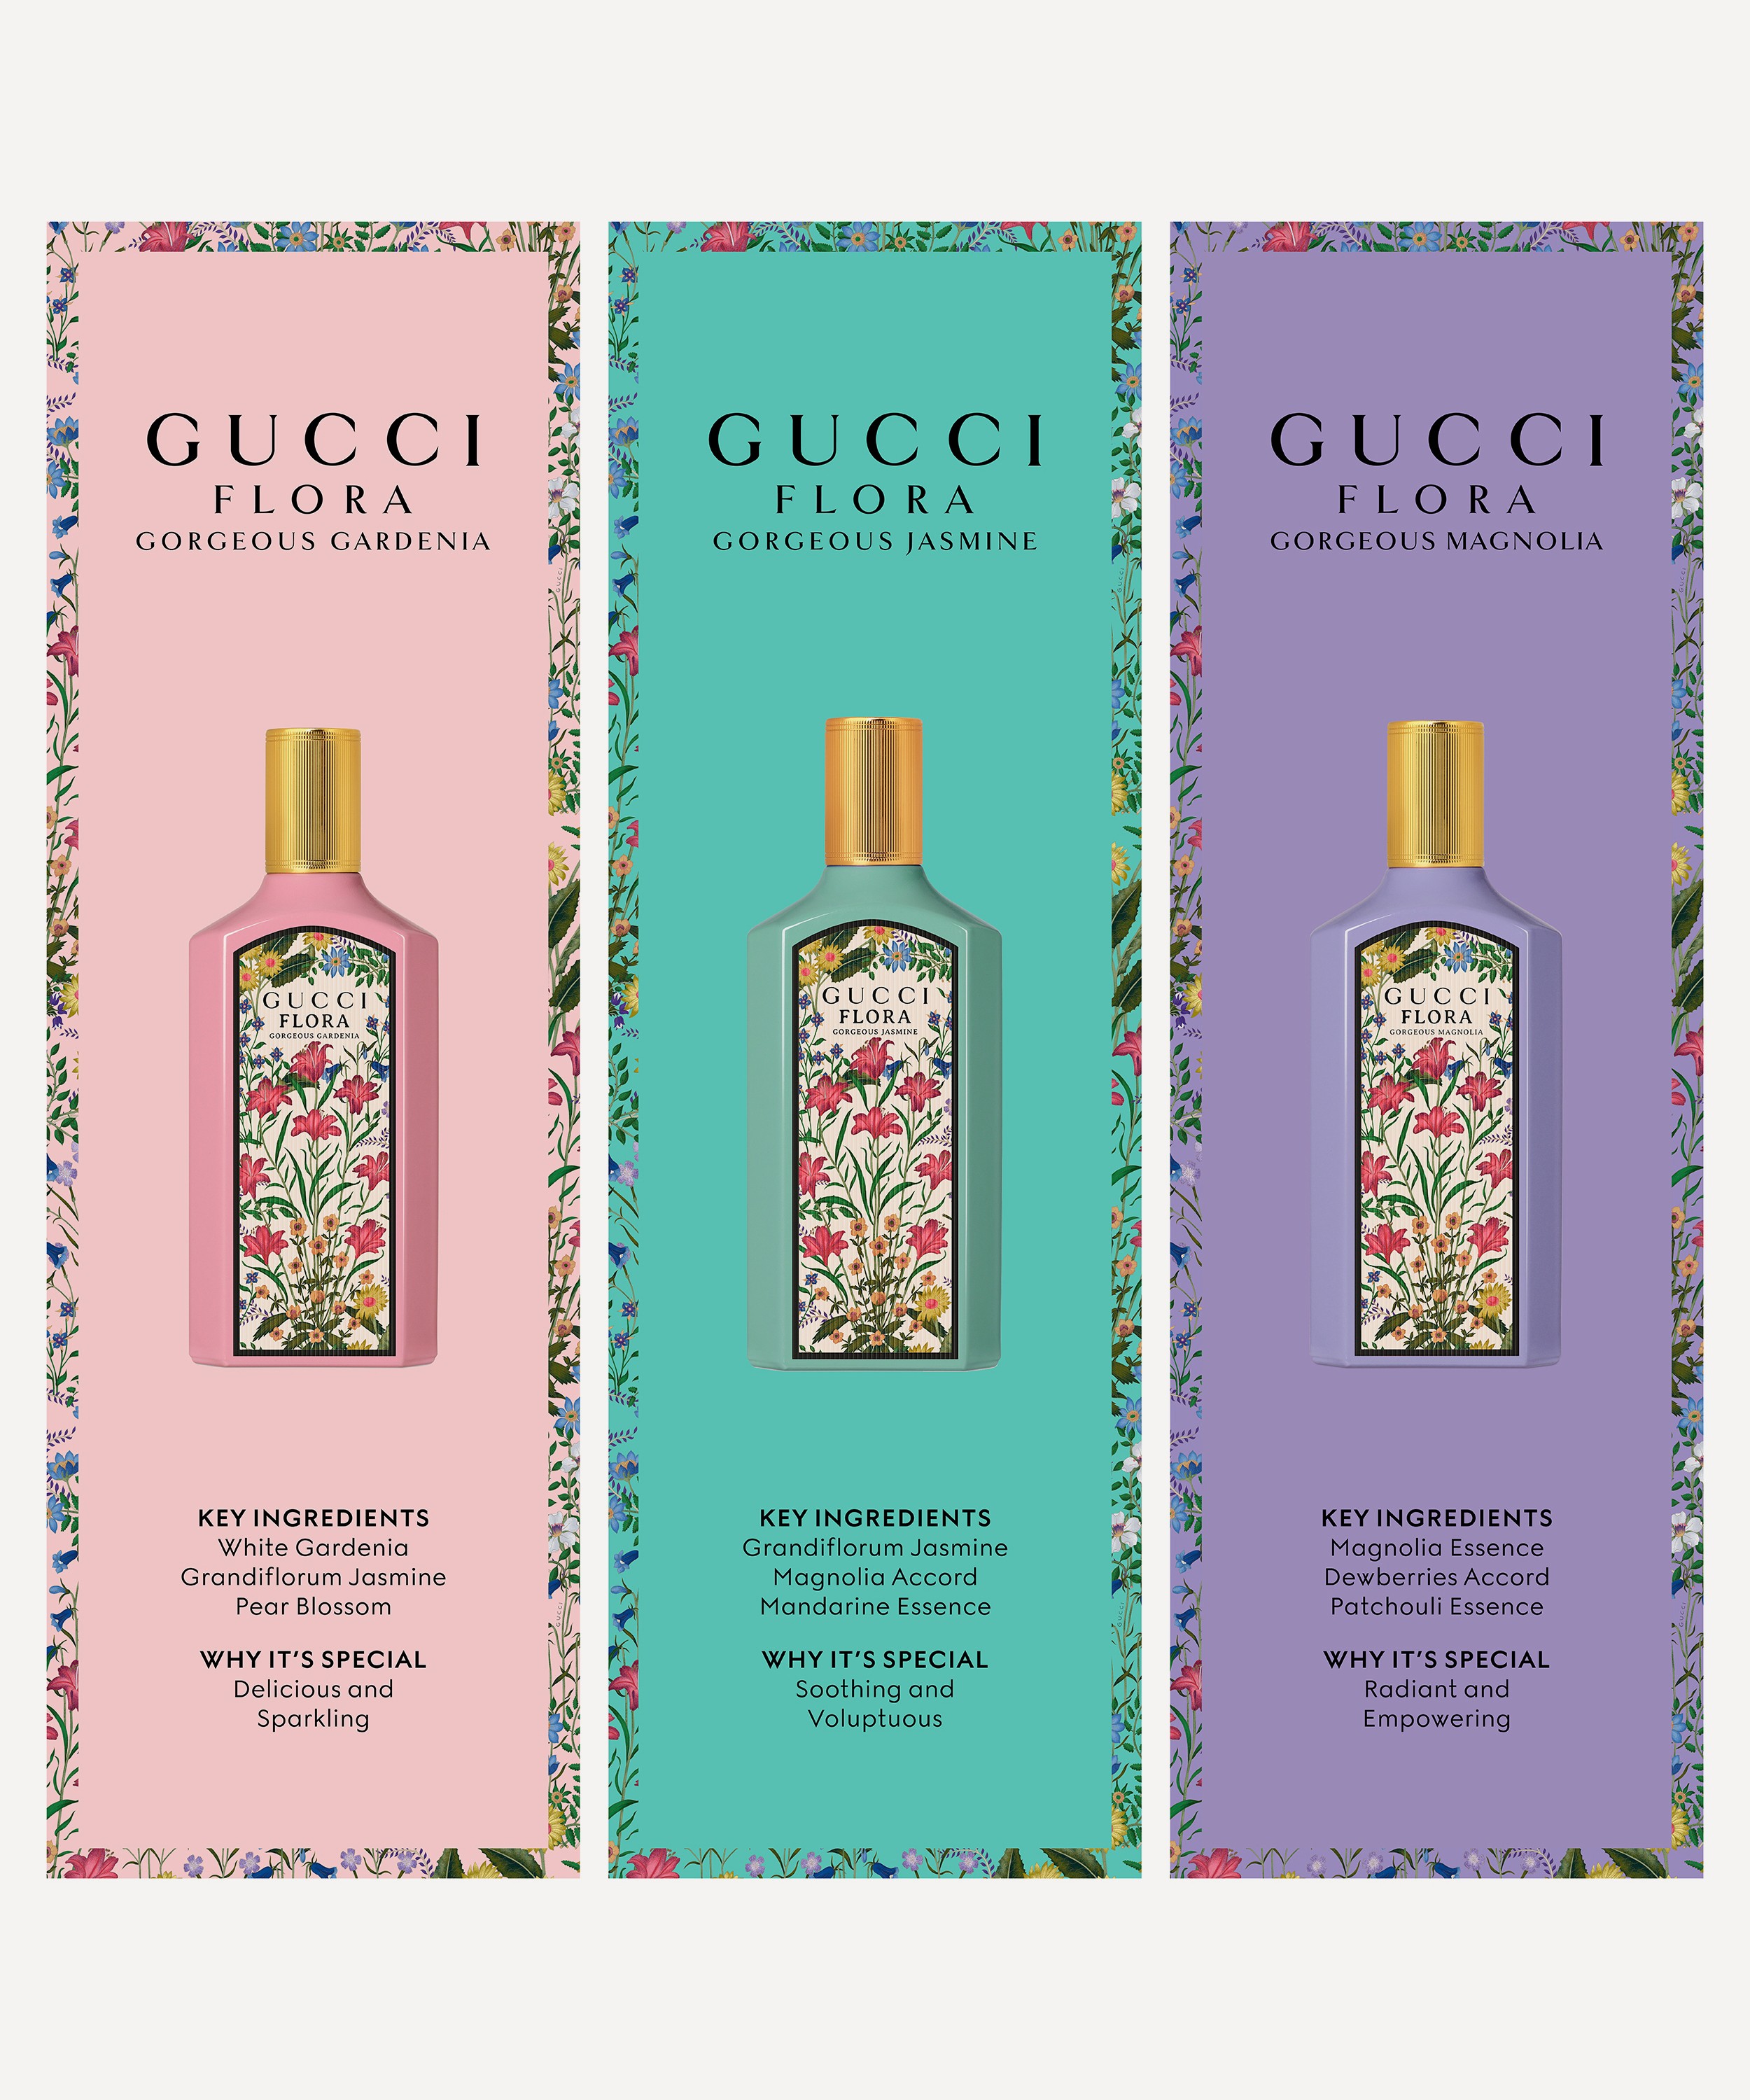 Gucci - Gucci Flora Gorgeous Magnolia Eau de Parfum 100ml image number 5